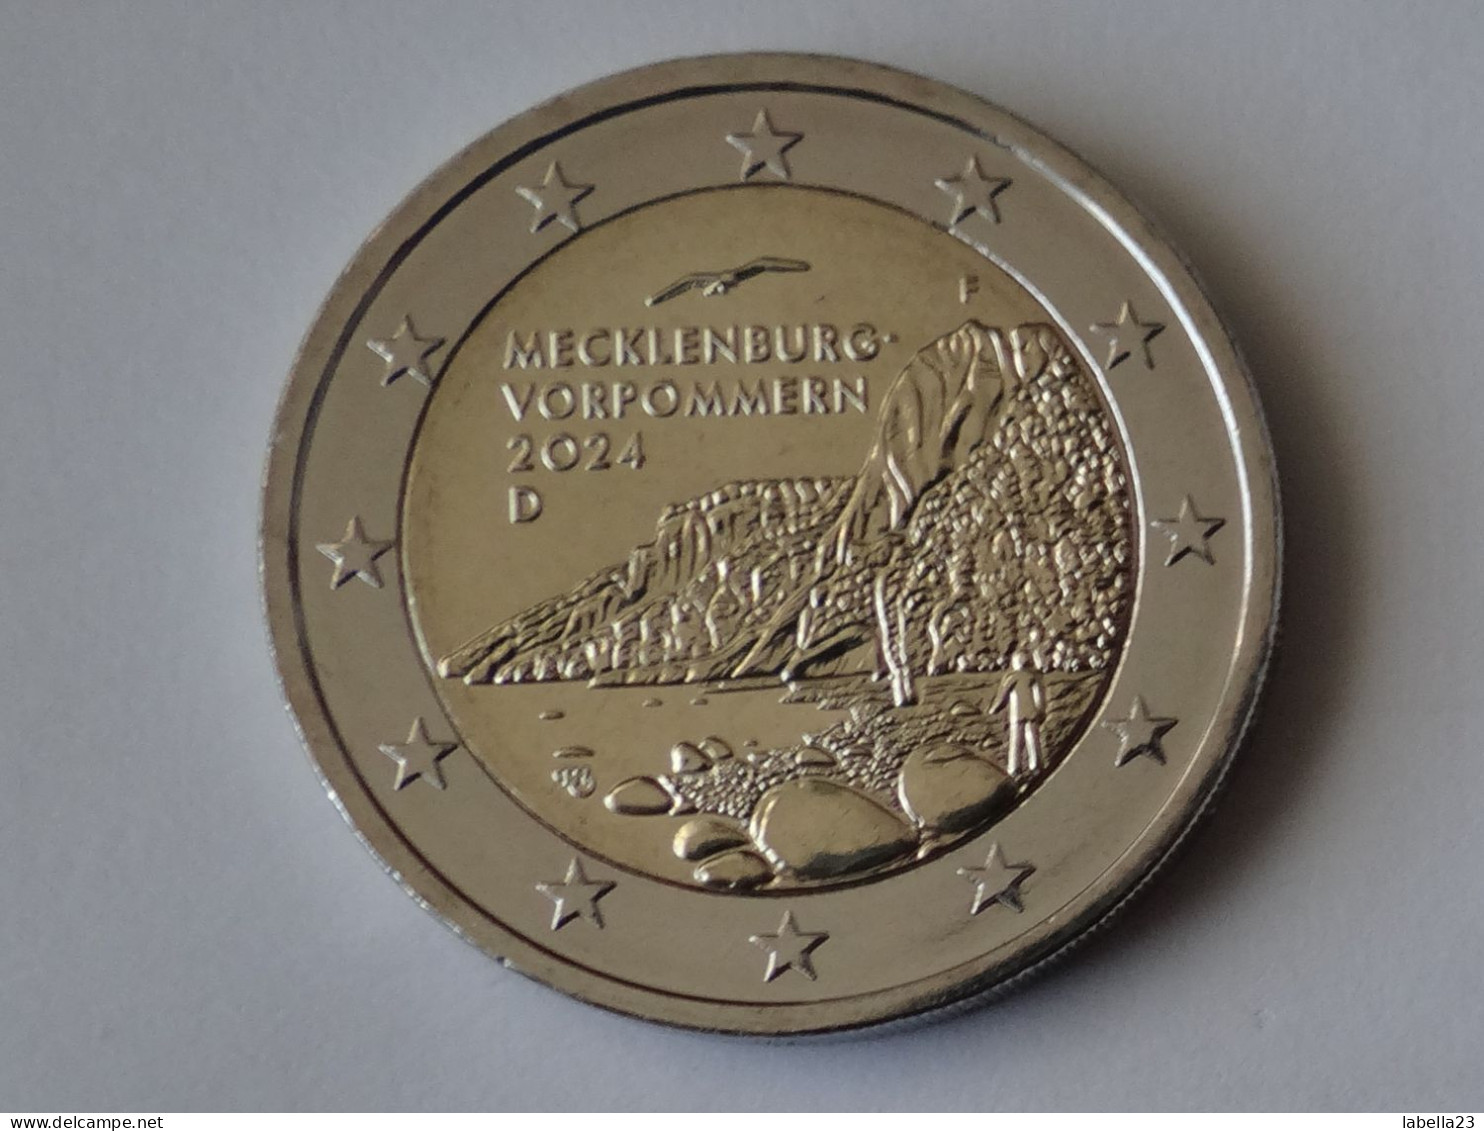 2 Euro Münze 2024 Länderserie II -"Mecklenburg-Vorpommern", Königsstuhl, Ausgabe F - Germany